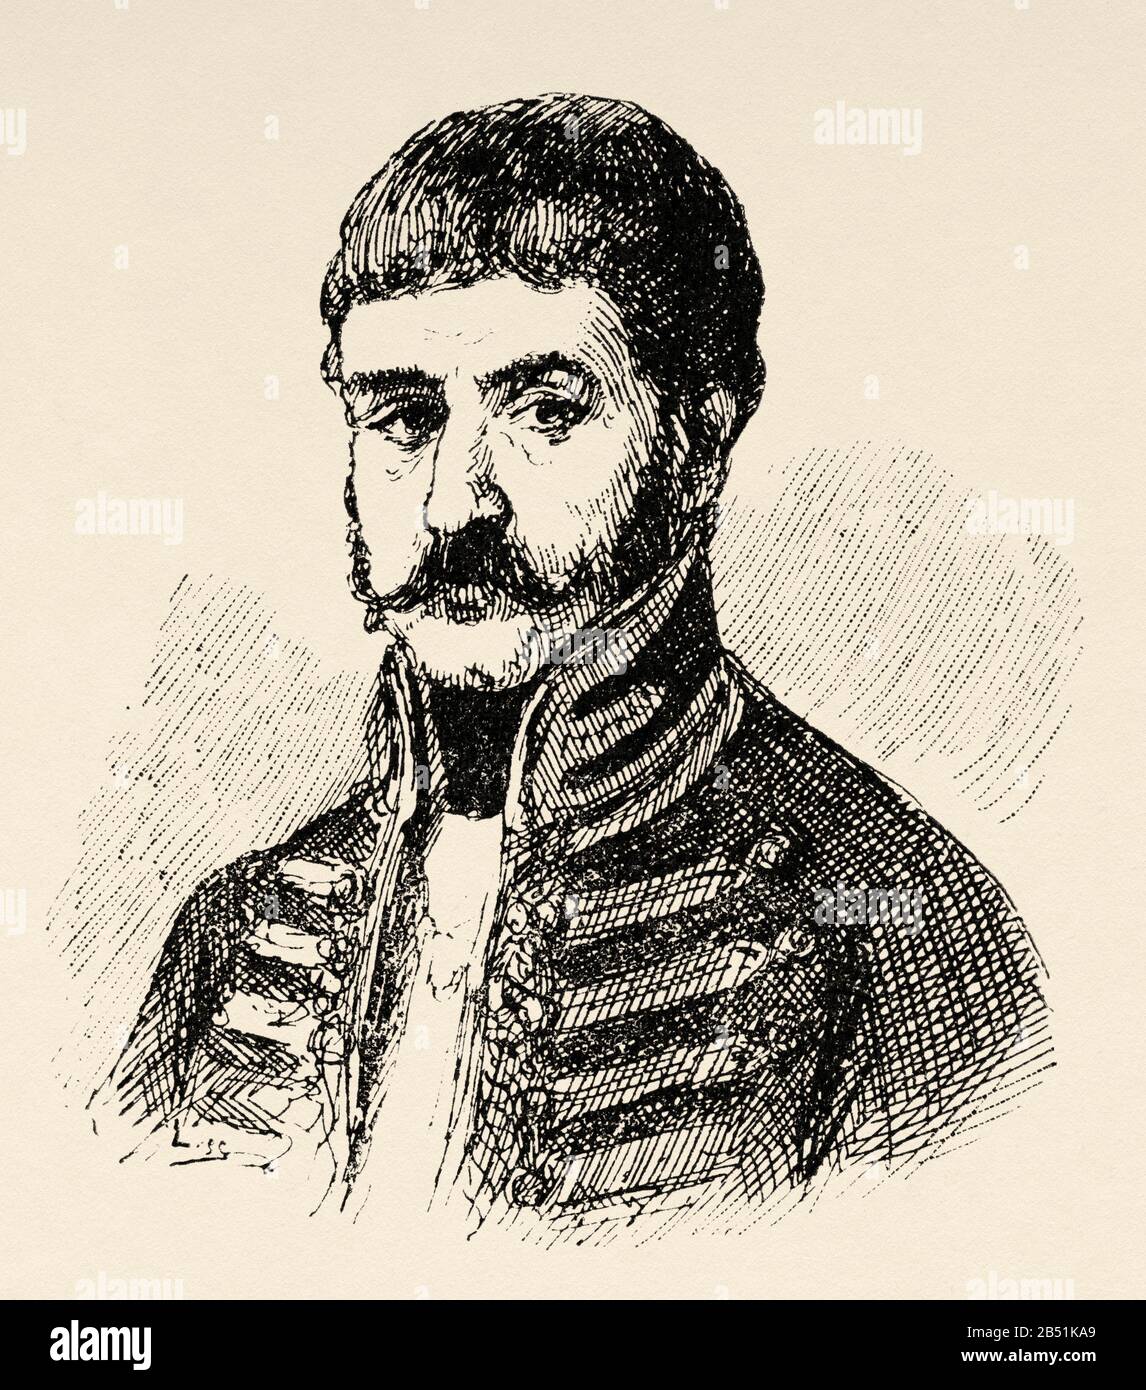 Retrato de Juan Martín Díez, llamado el Empecinado (Castrillo de Duero 1775 - Roa 1825). Ejército español, héroe de la Guerra de Independencia española ag Foto de stock